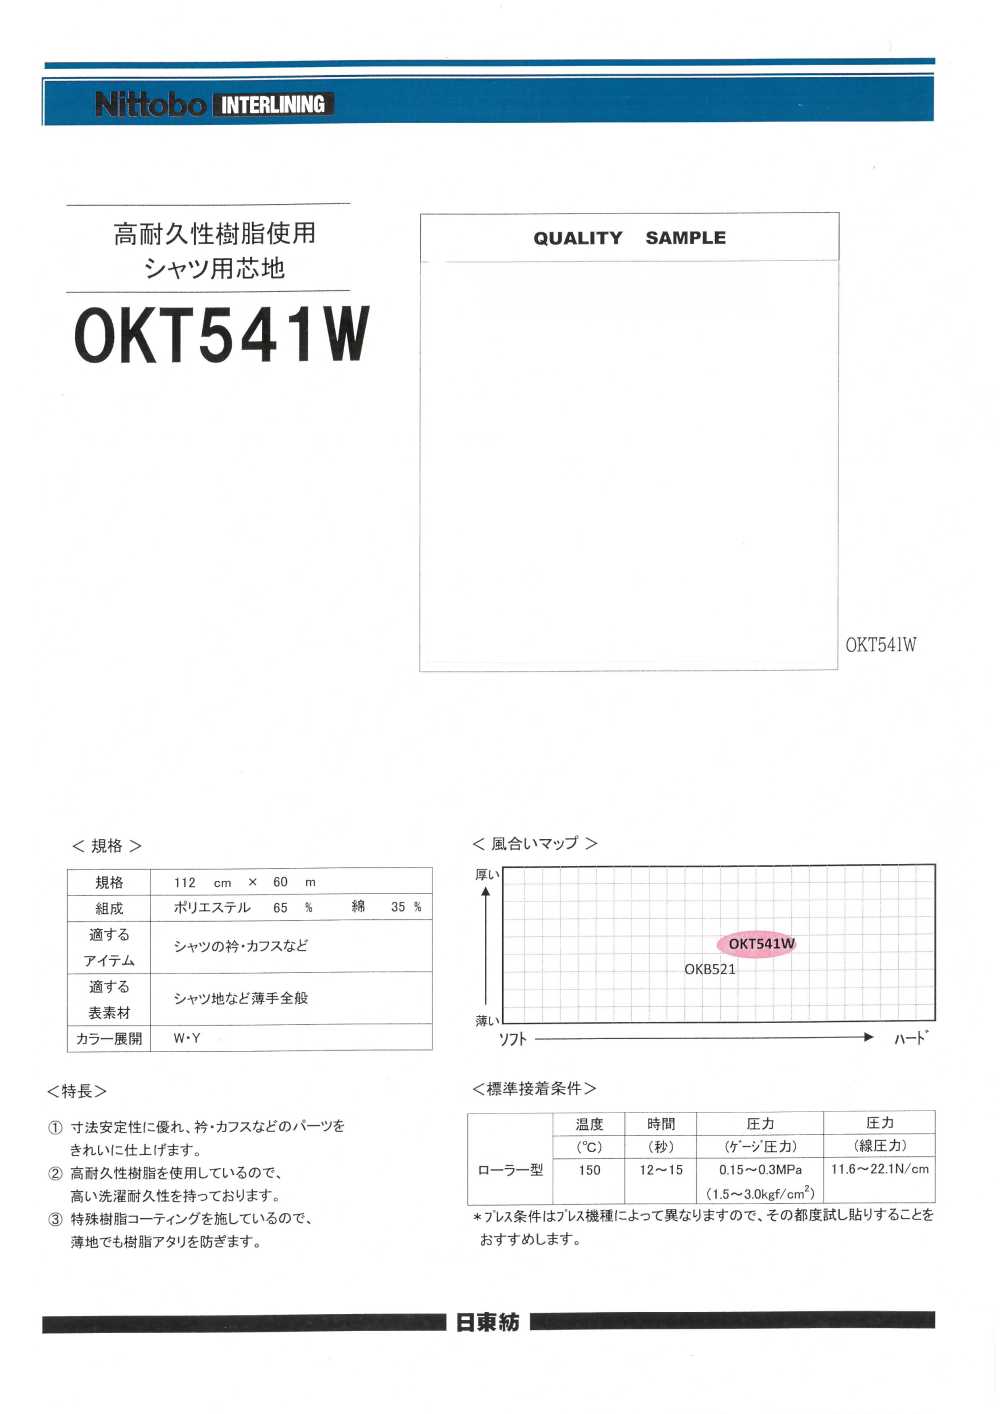 OKT541W Materiale Di Interfodera Per Camicie Realizzato In Resina Altamente Resistente Nittobo